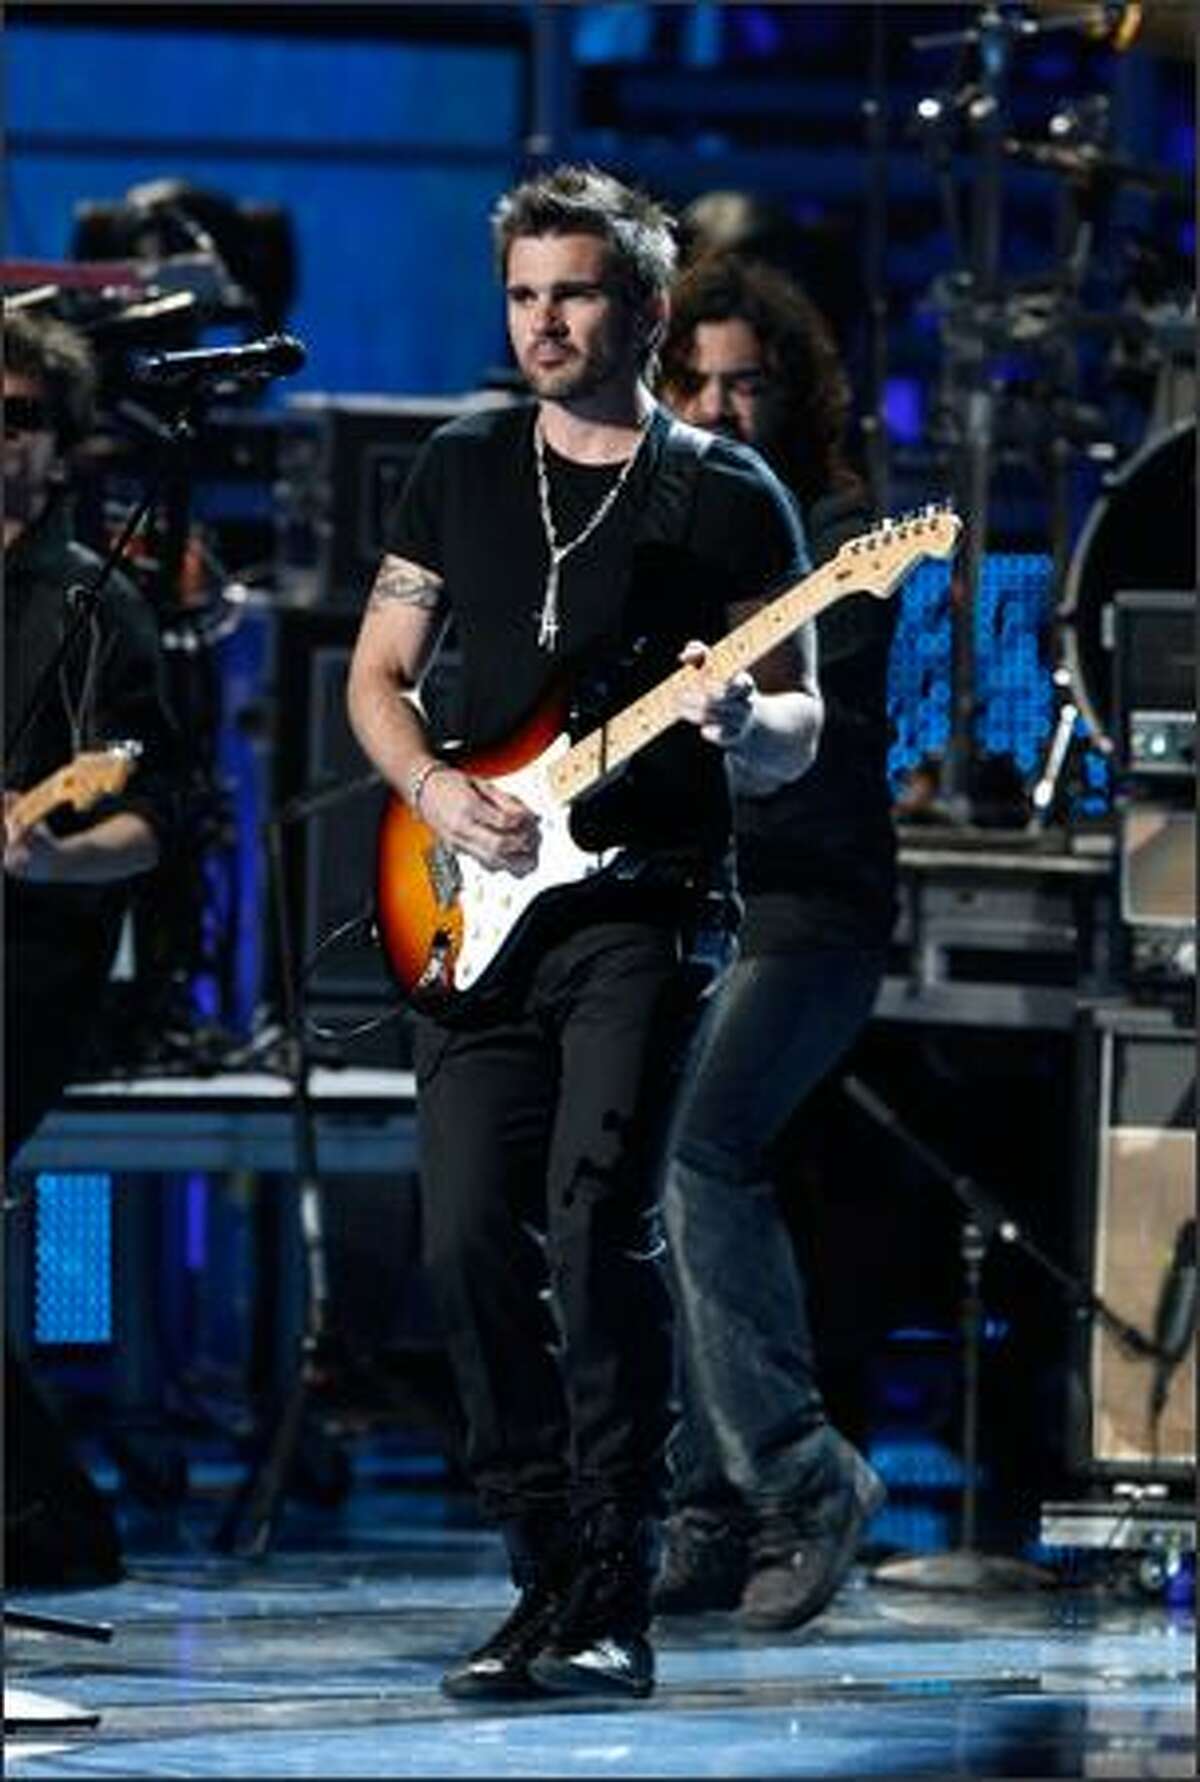 Singer Juanes performs.